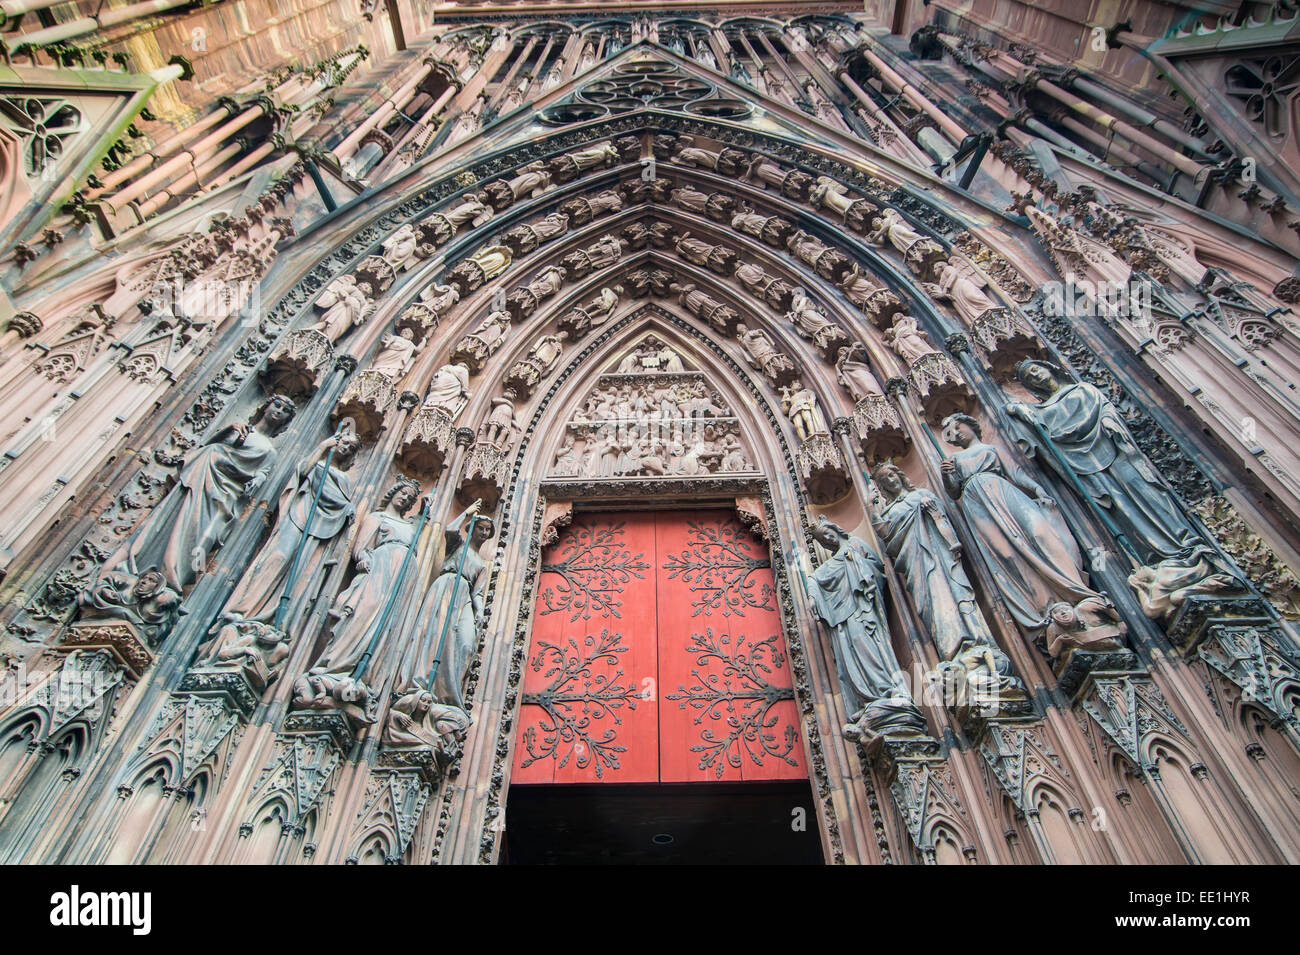 Détail du tympan sur Notre Dame de la cathédrale de Strasbourg, Site du patrimoine mondial de l'UNESCO, Strasbourg, Bas-Rhin, Alsace, France Banque D'Images